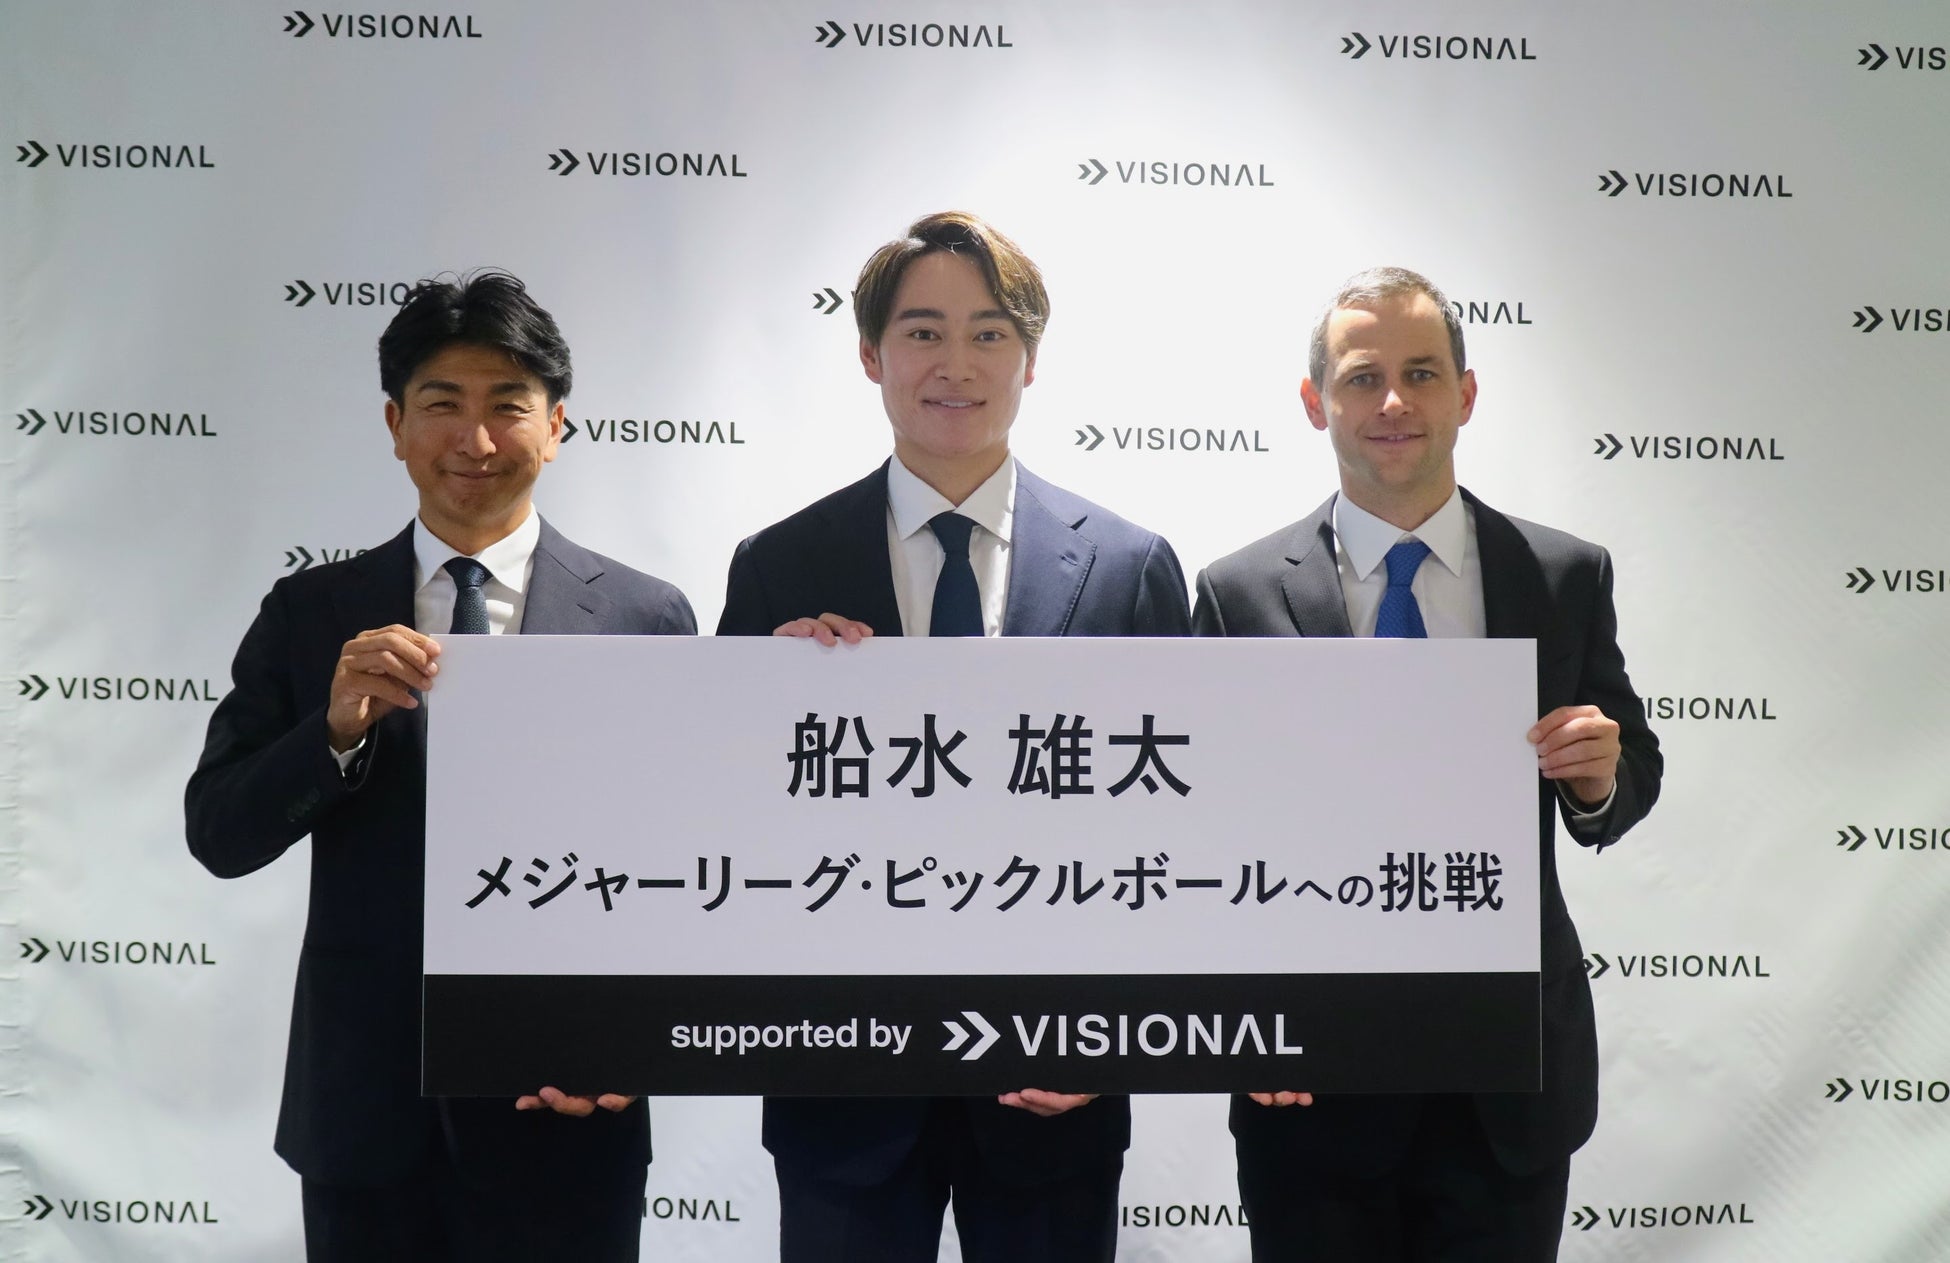 プロソフトテニスプレイヤー 船水 雄太選手の米国「メジャーリーグ・ピックルボール」への挑戦をVisionalが支援